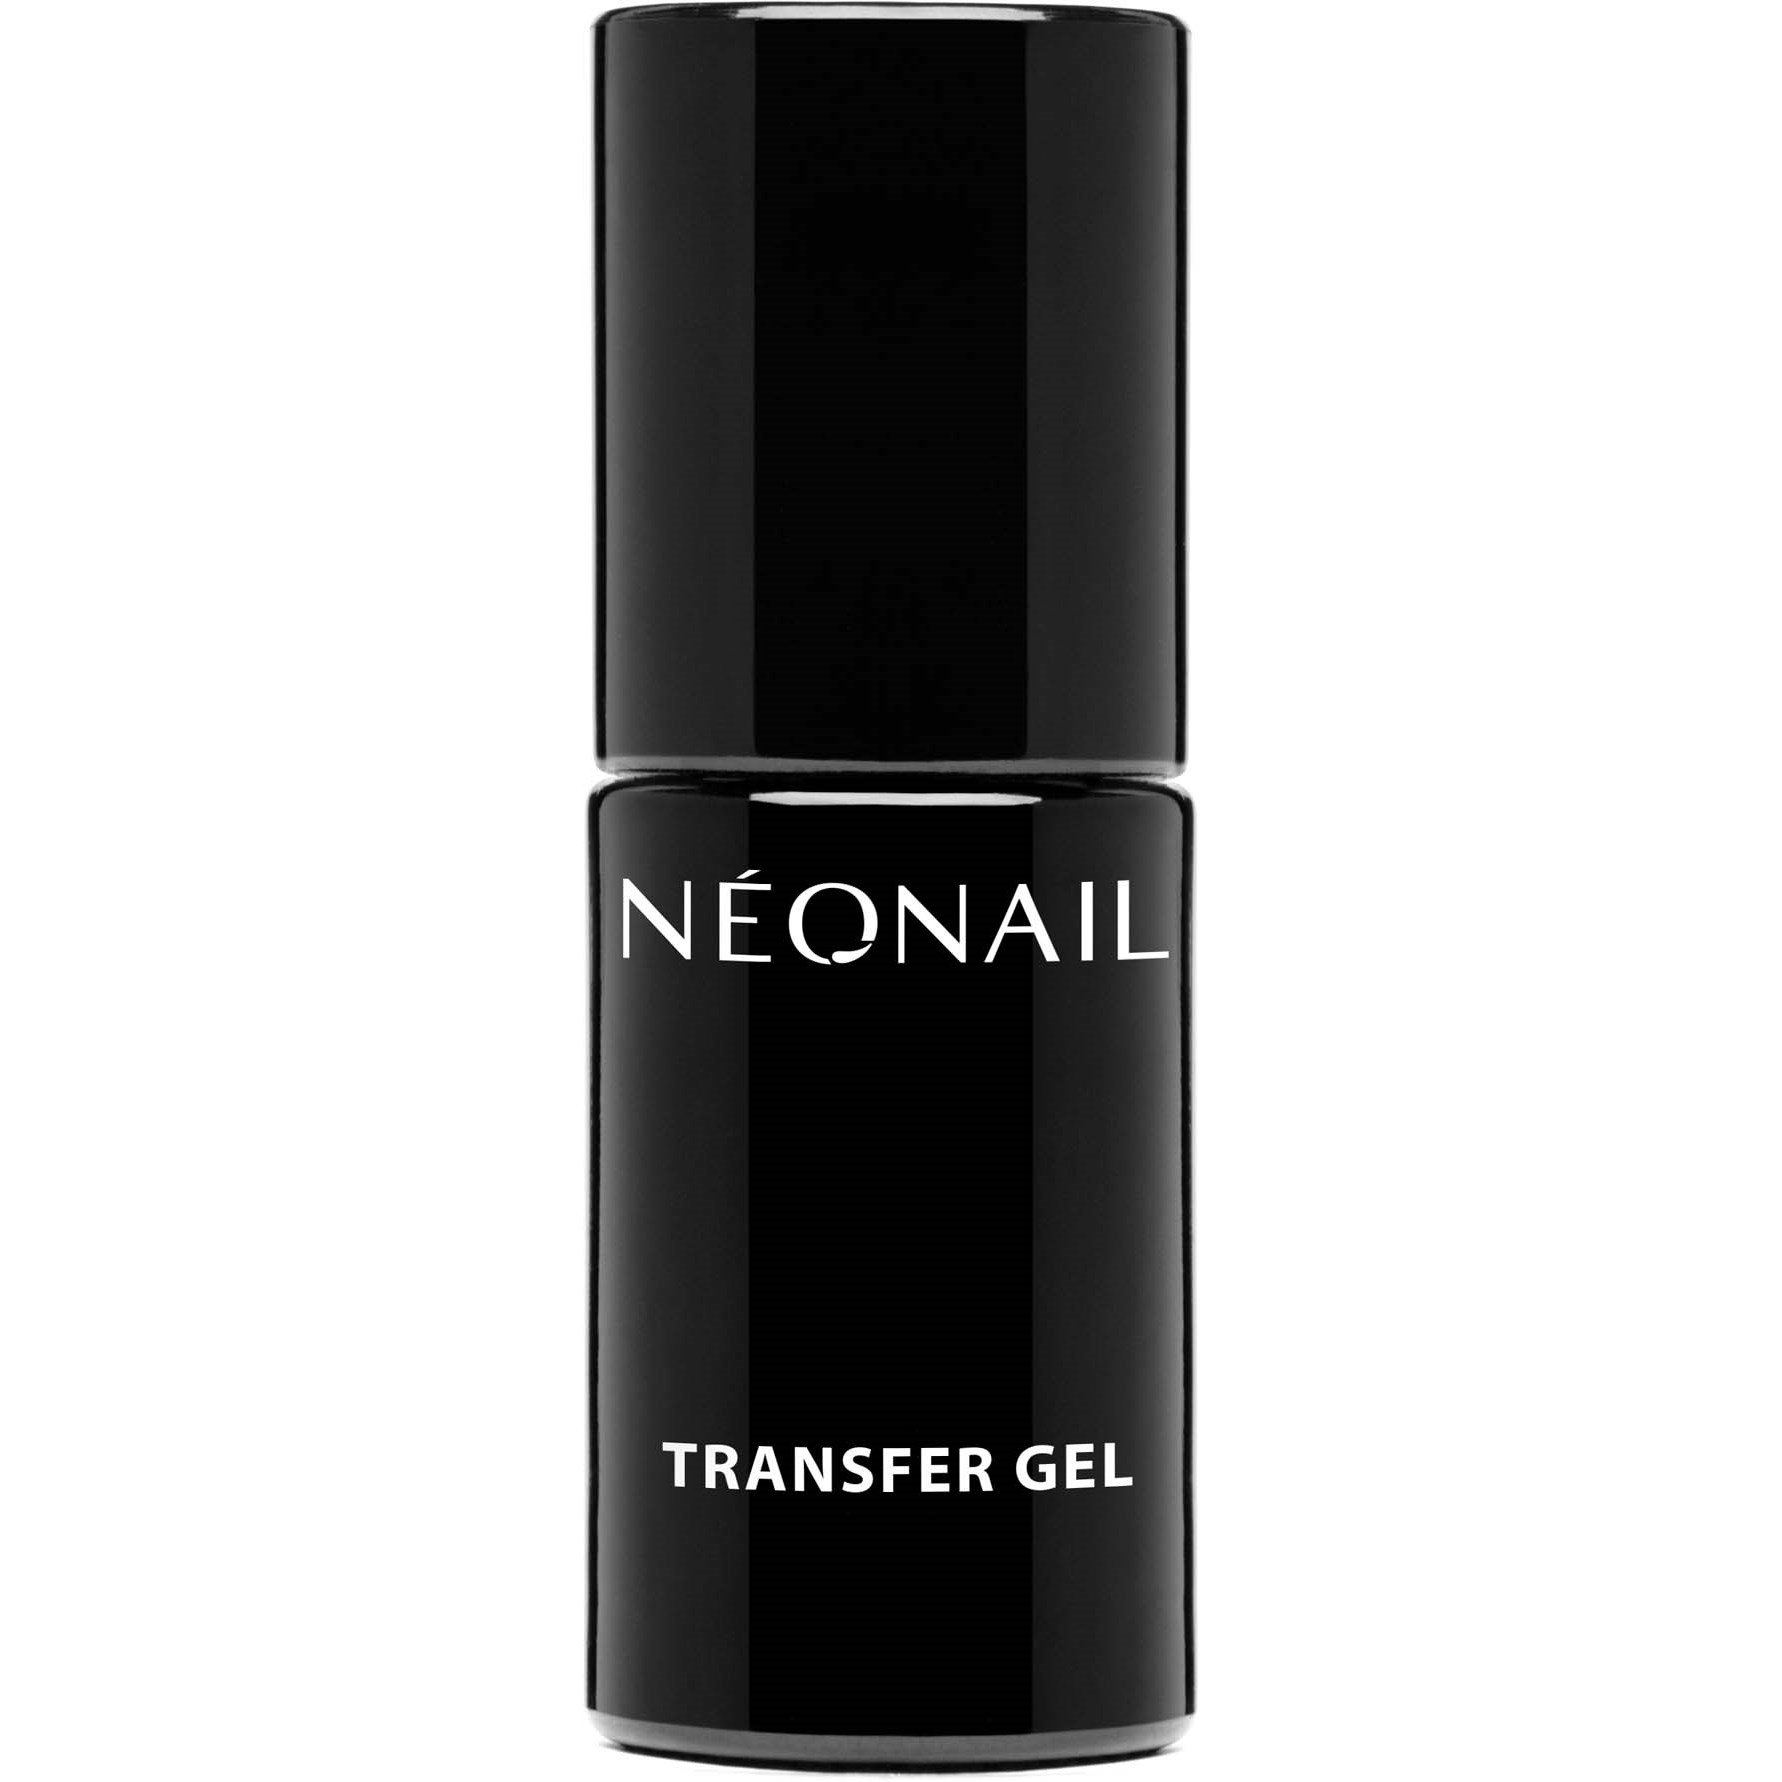 NEONAIL Transfer Gel 7 ml